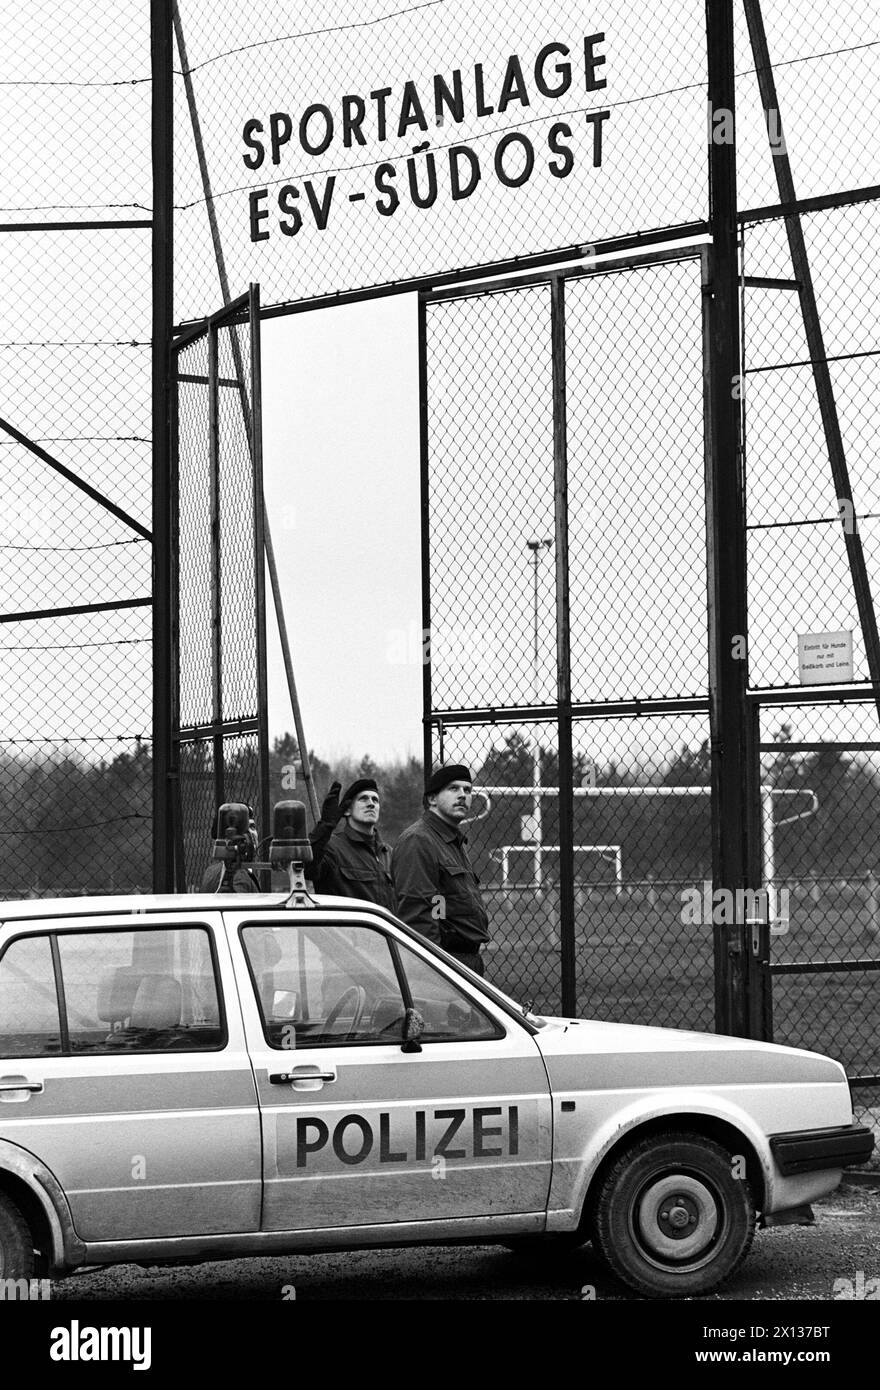 Wien am 23. Dezember 1990: Die 8-jährige Nicole Strau wurde tot hinter der Sportanlage Laaer Berg in Wien aufgefunden Favoriten. Im Bild: Eintritt in die Sportanlage ESV-Suedost am Laaer Berg. - 19901223 PD0007 - Rechteinfo: Rechte verwaltet (RM) Stockfoto